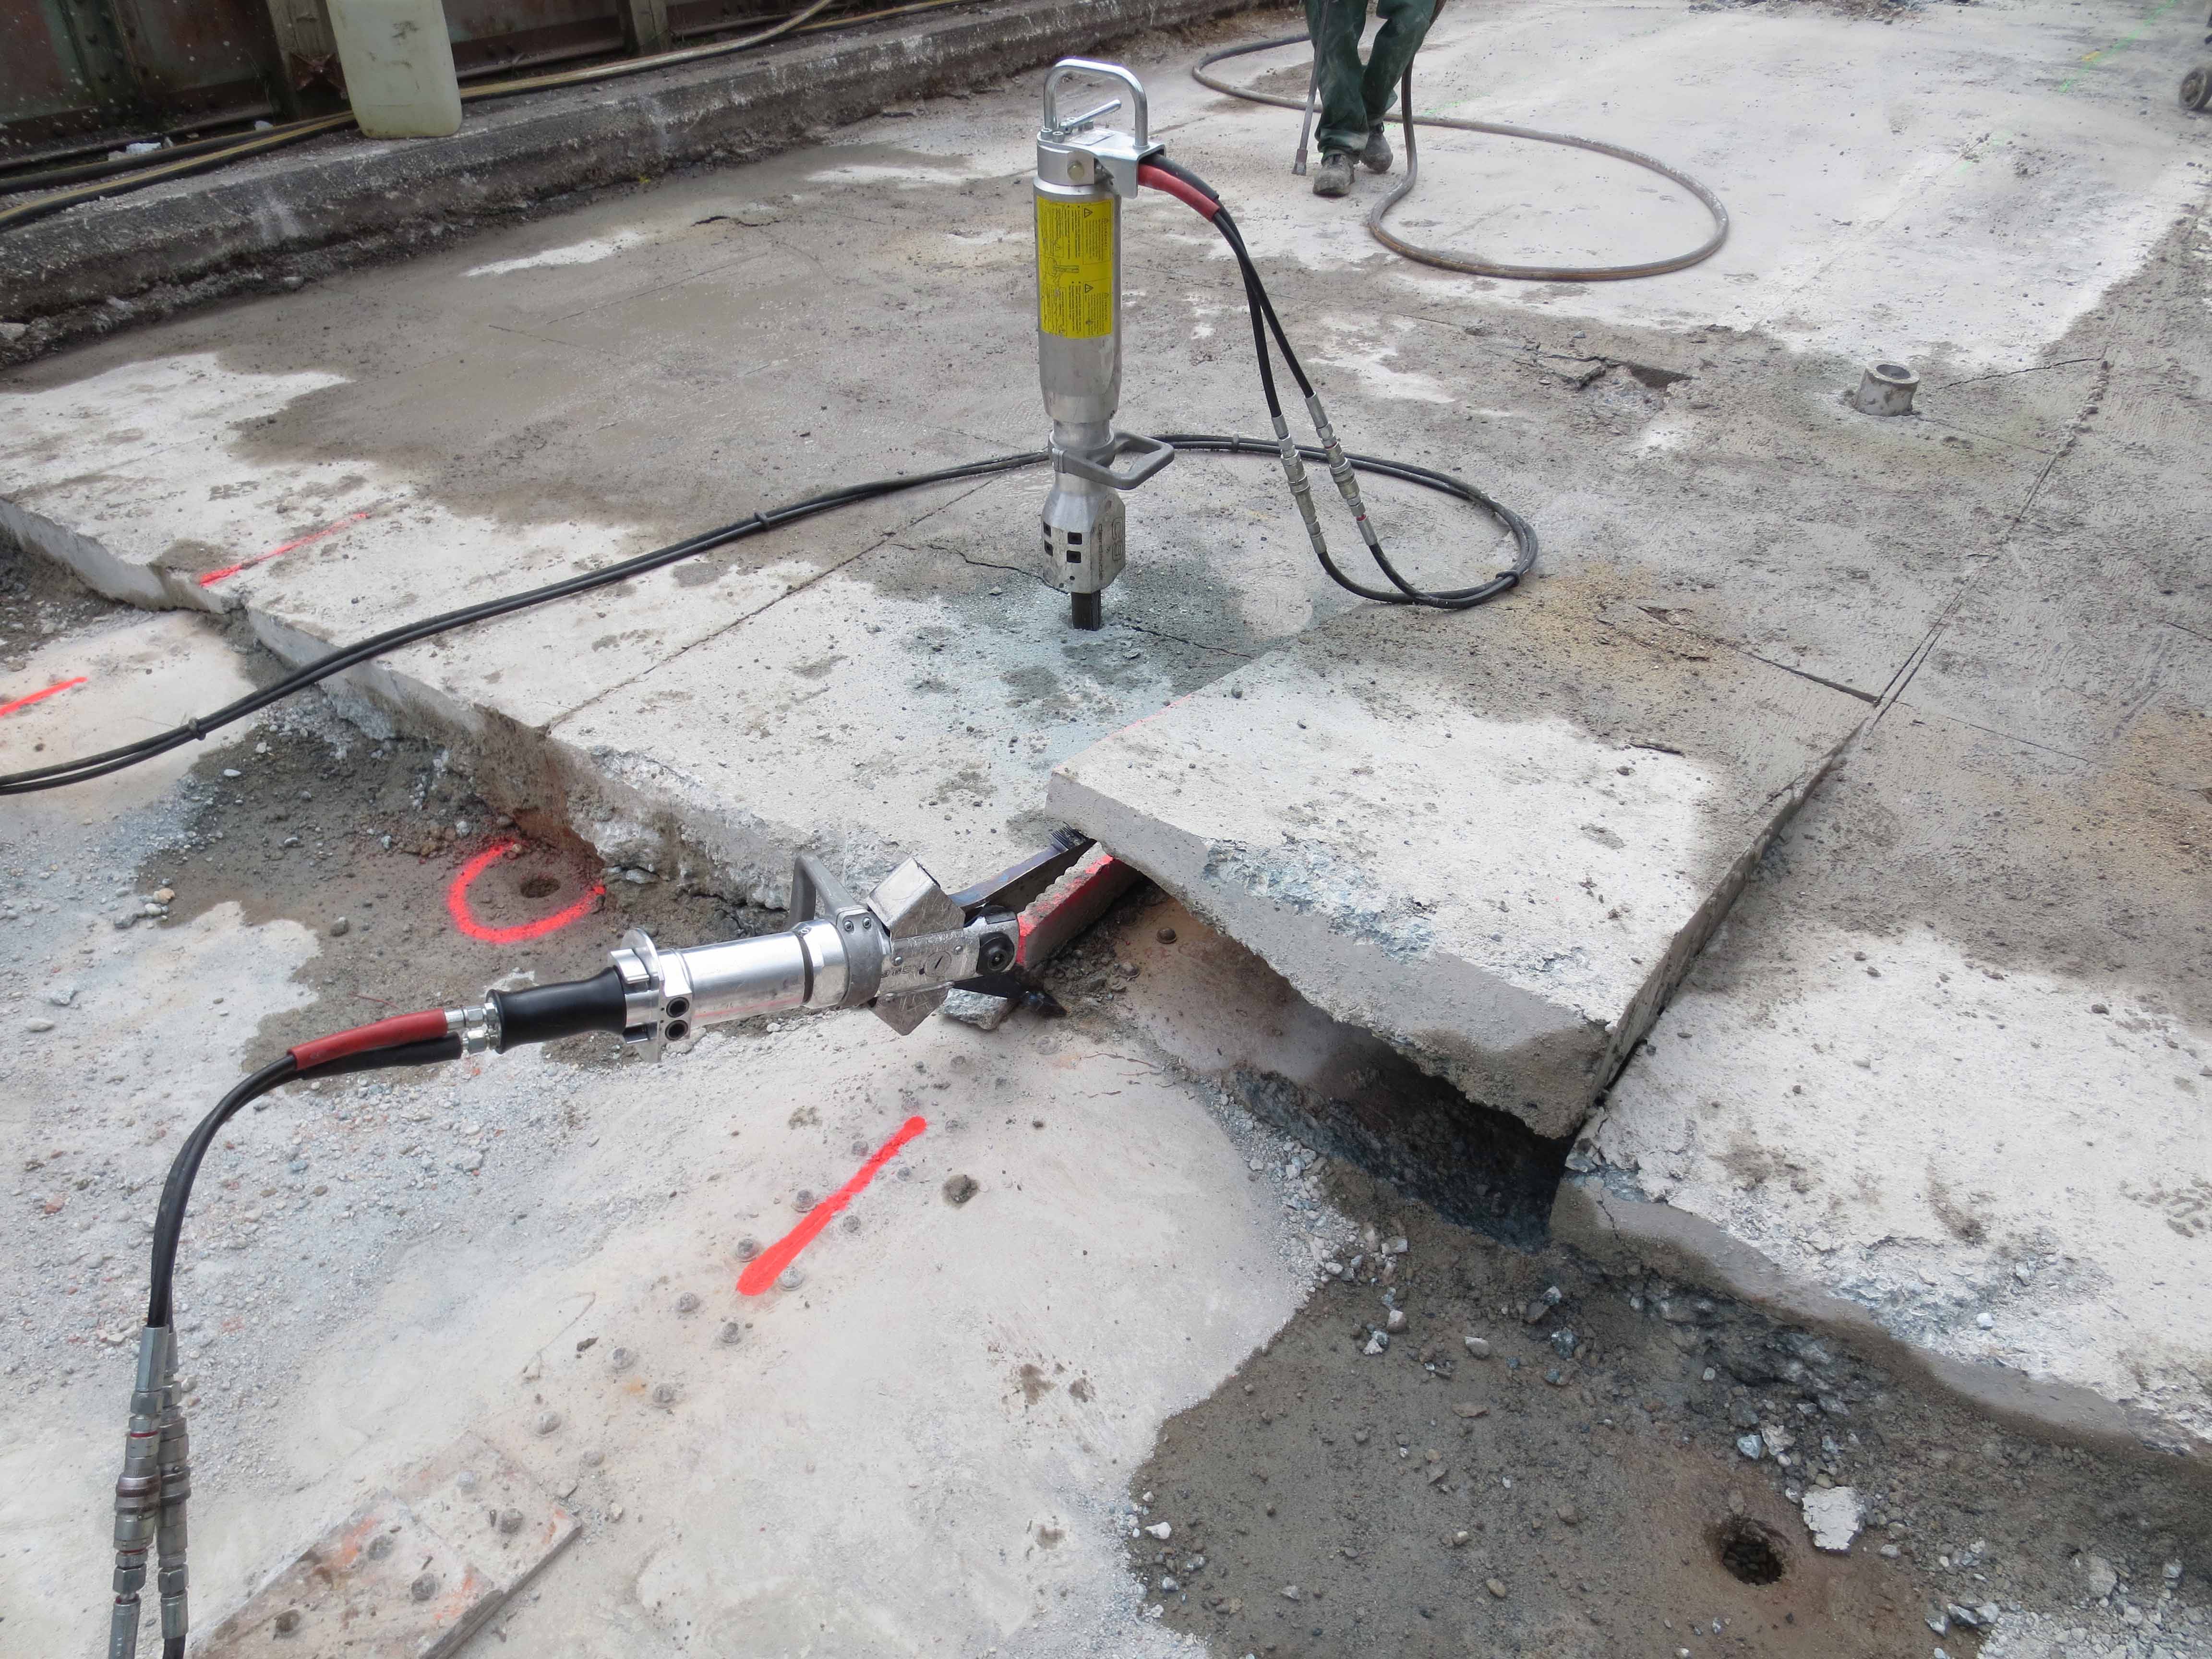 Гидроклин и гидравлические бетоноломы для демонтажа монолитного фундамента и железобетонных перекрытий